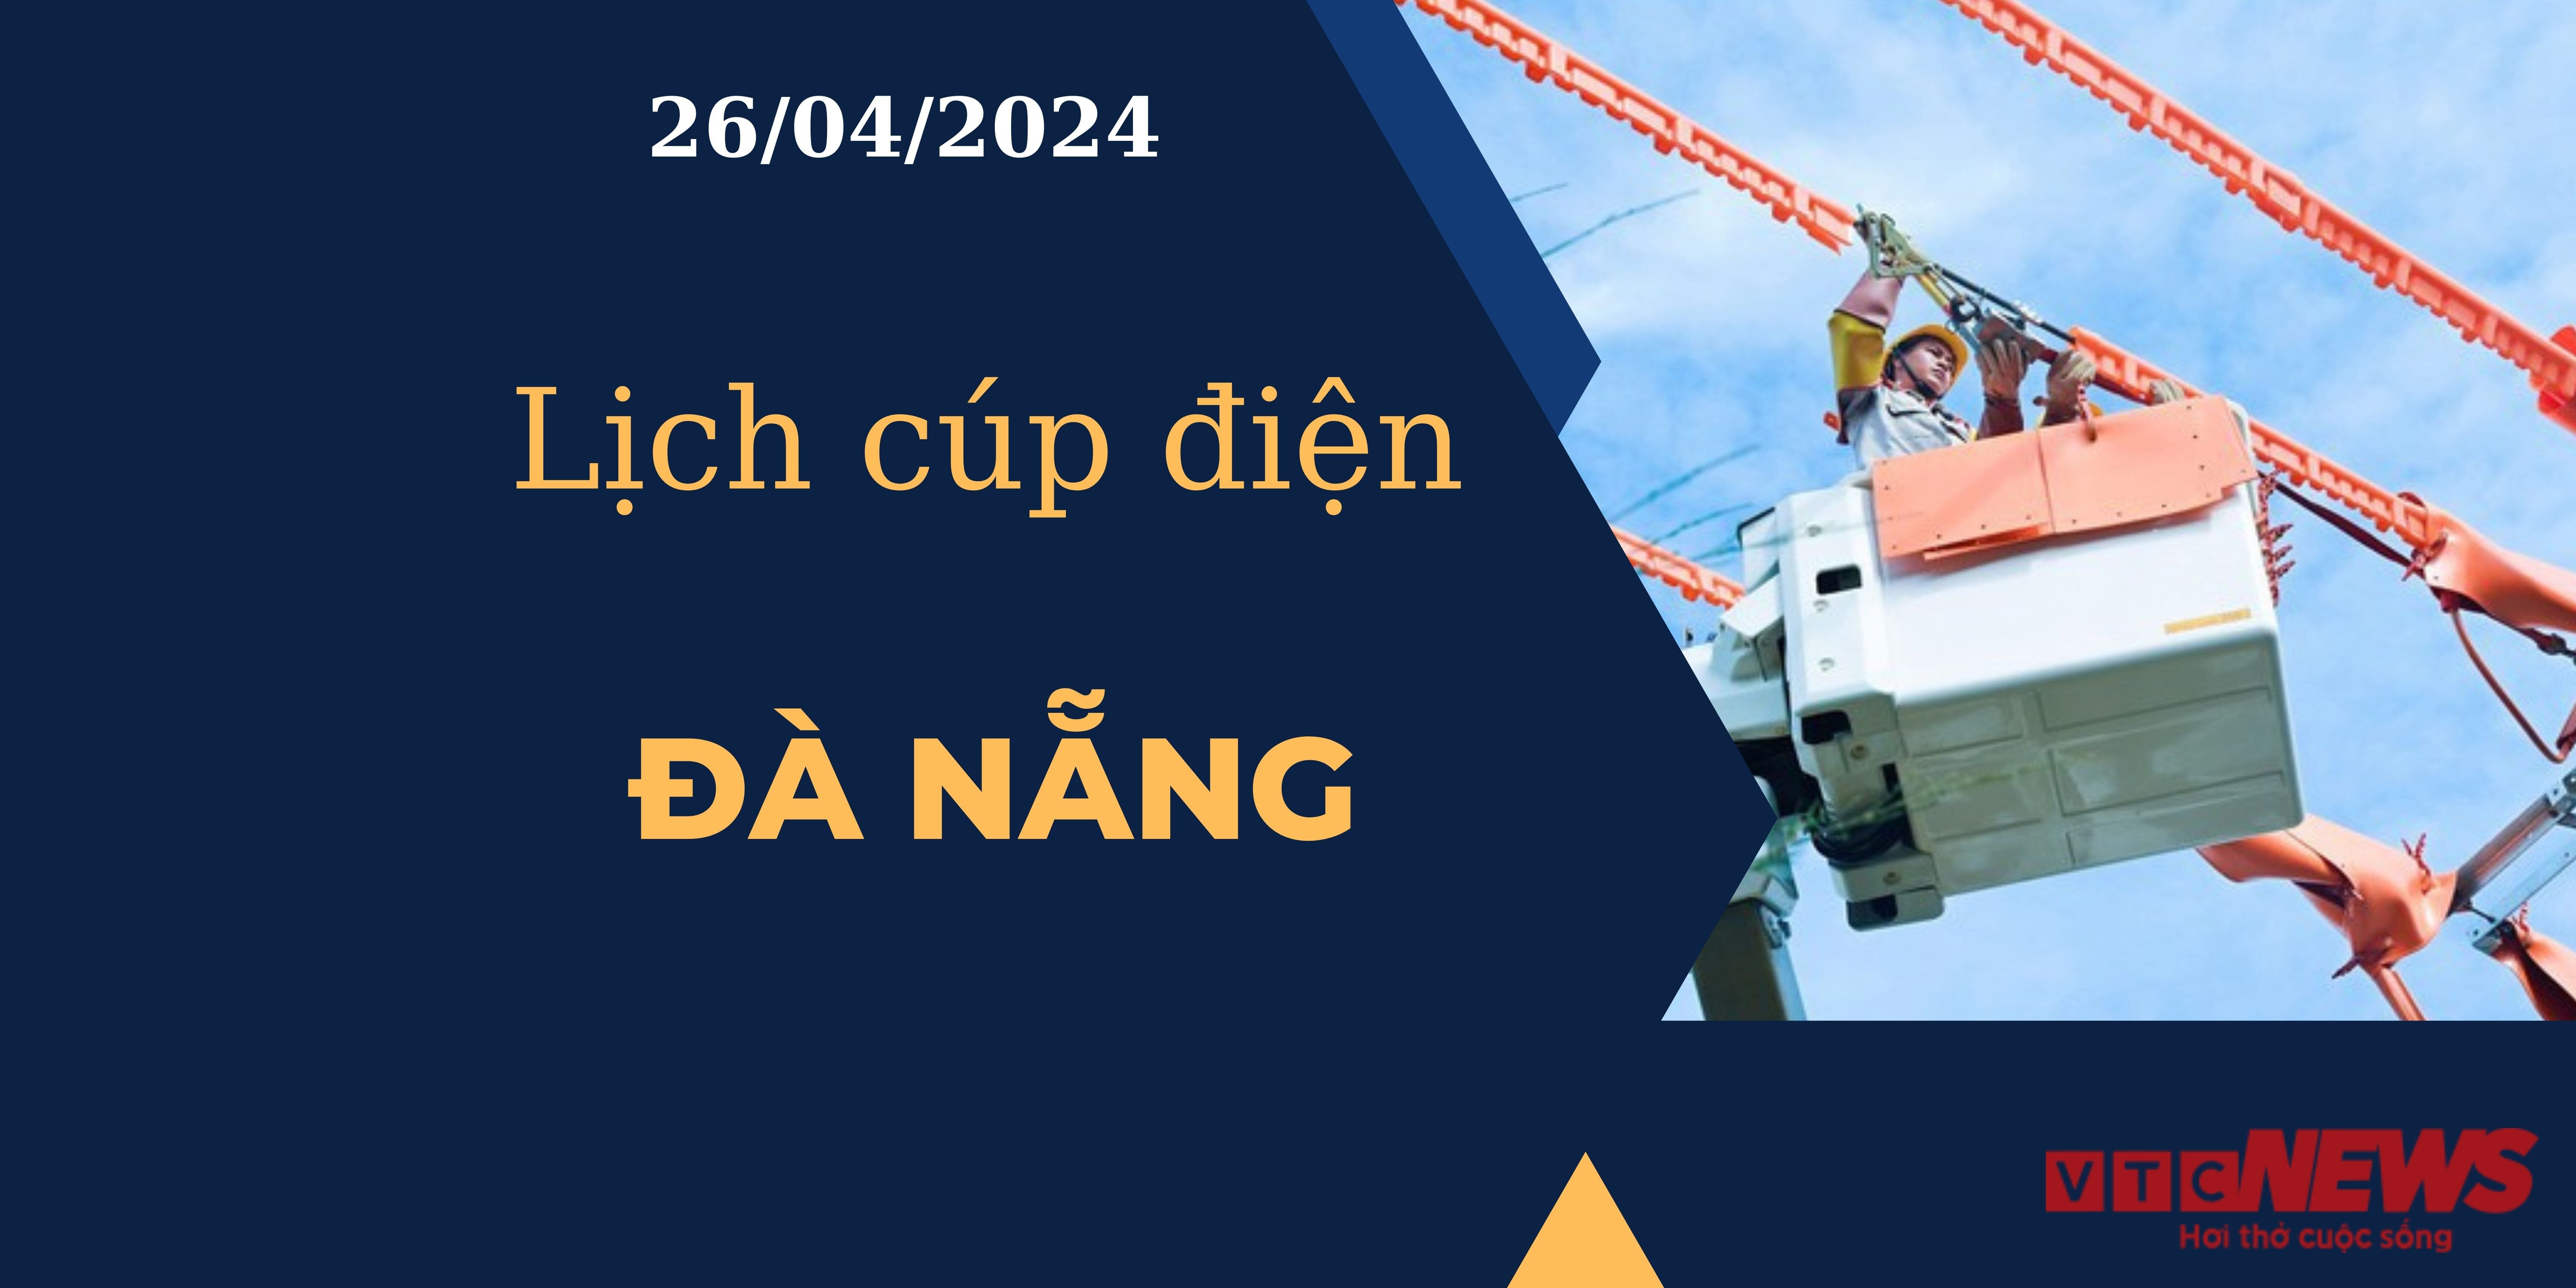 Lịch cúp điện hôm nay tại Đà Nẵng ngày 26/04/2024